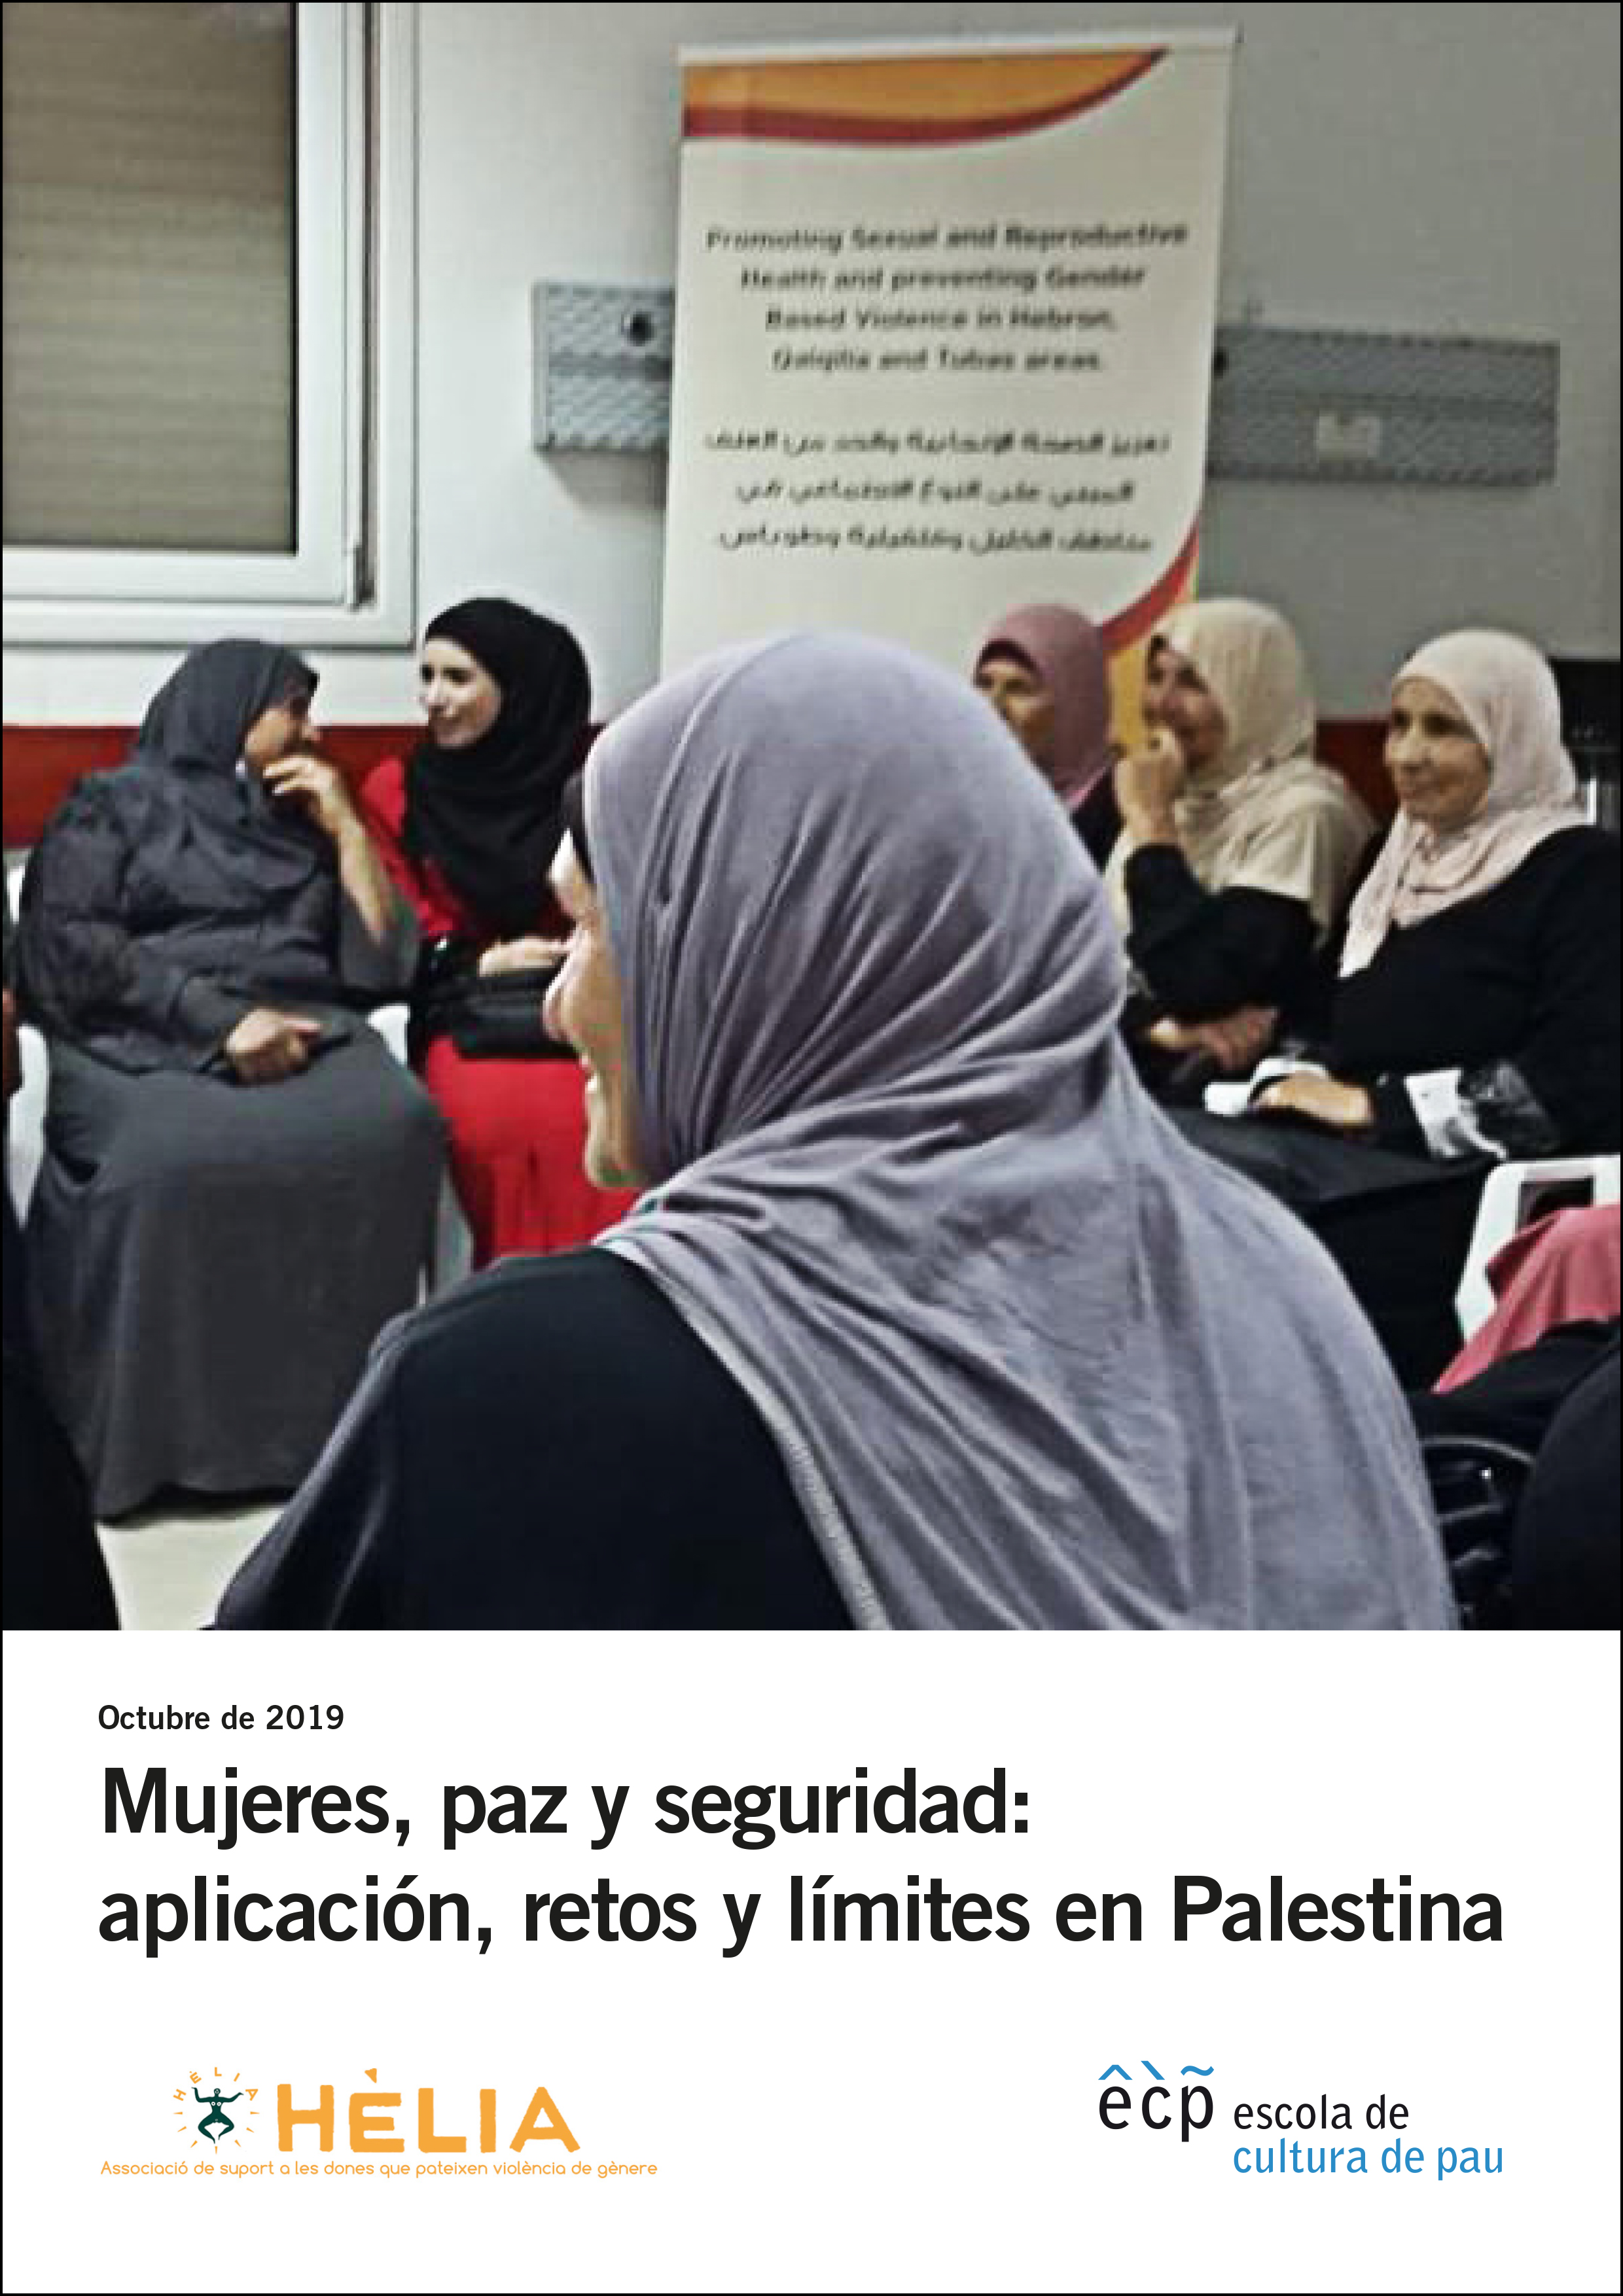 Mujeres, paz y seguridad: aplicación, retos y límites en Palestina